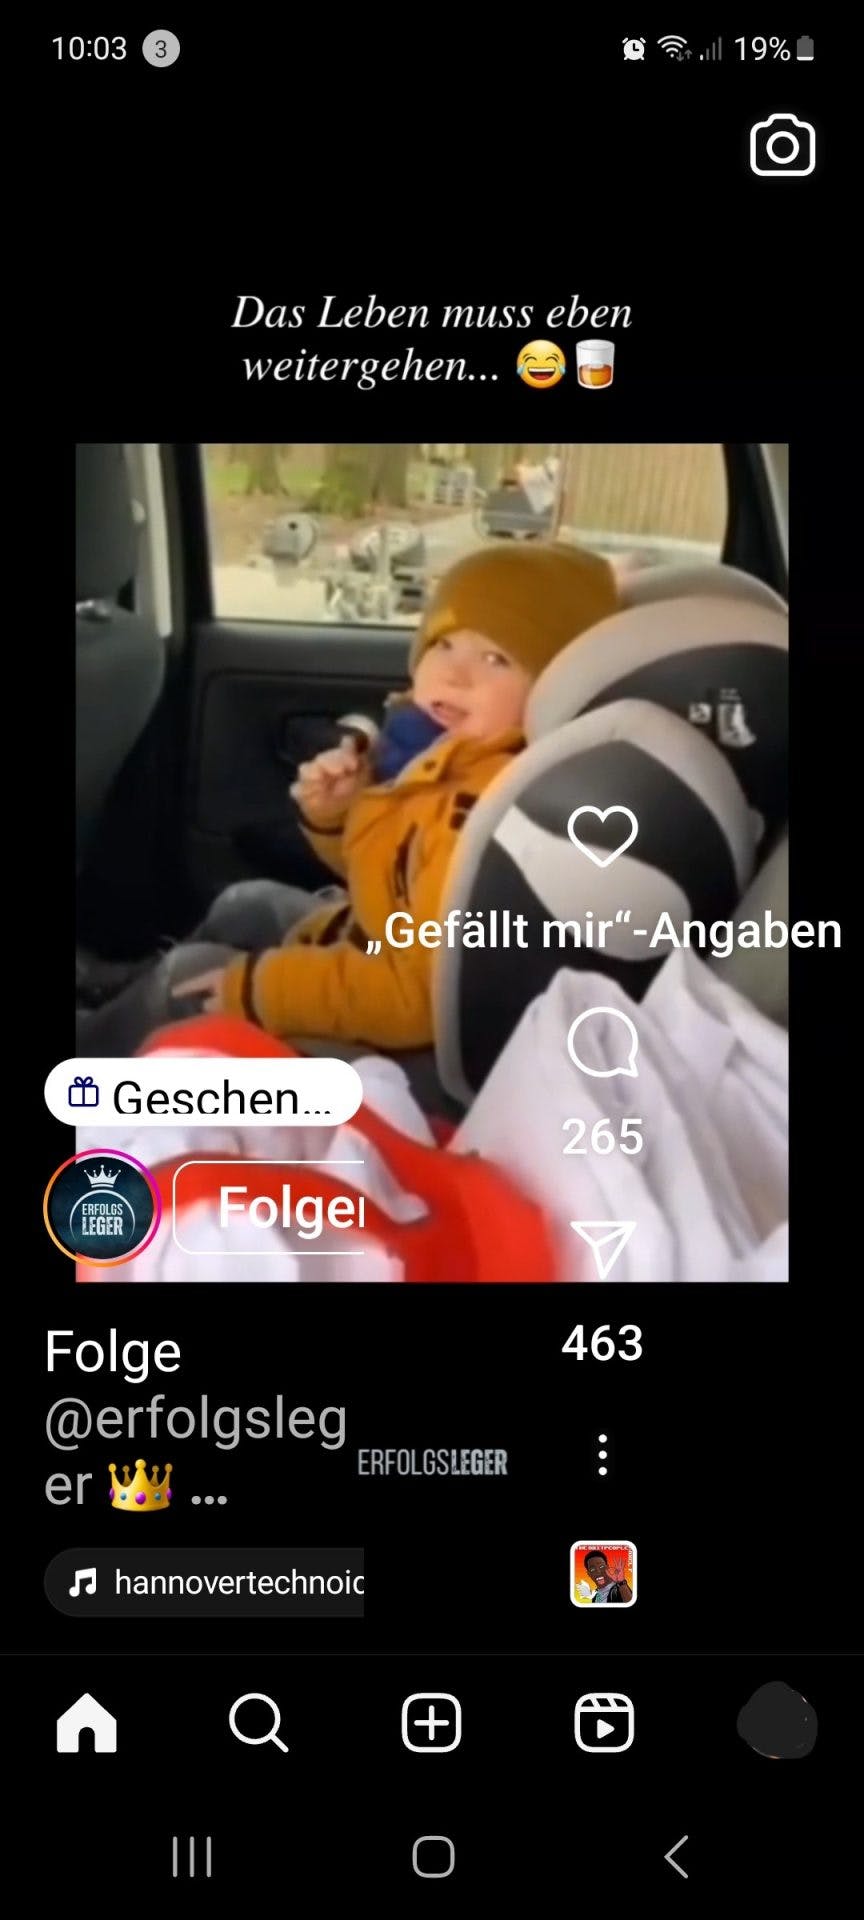 Ein Posting auf Instagram, das ein Video in einem quadratischen Format zeigt. Das Bild zeigt ein lachendes kleines Kind in einem Autositz mit dem Text Das Leben muss weitergehen ...